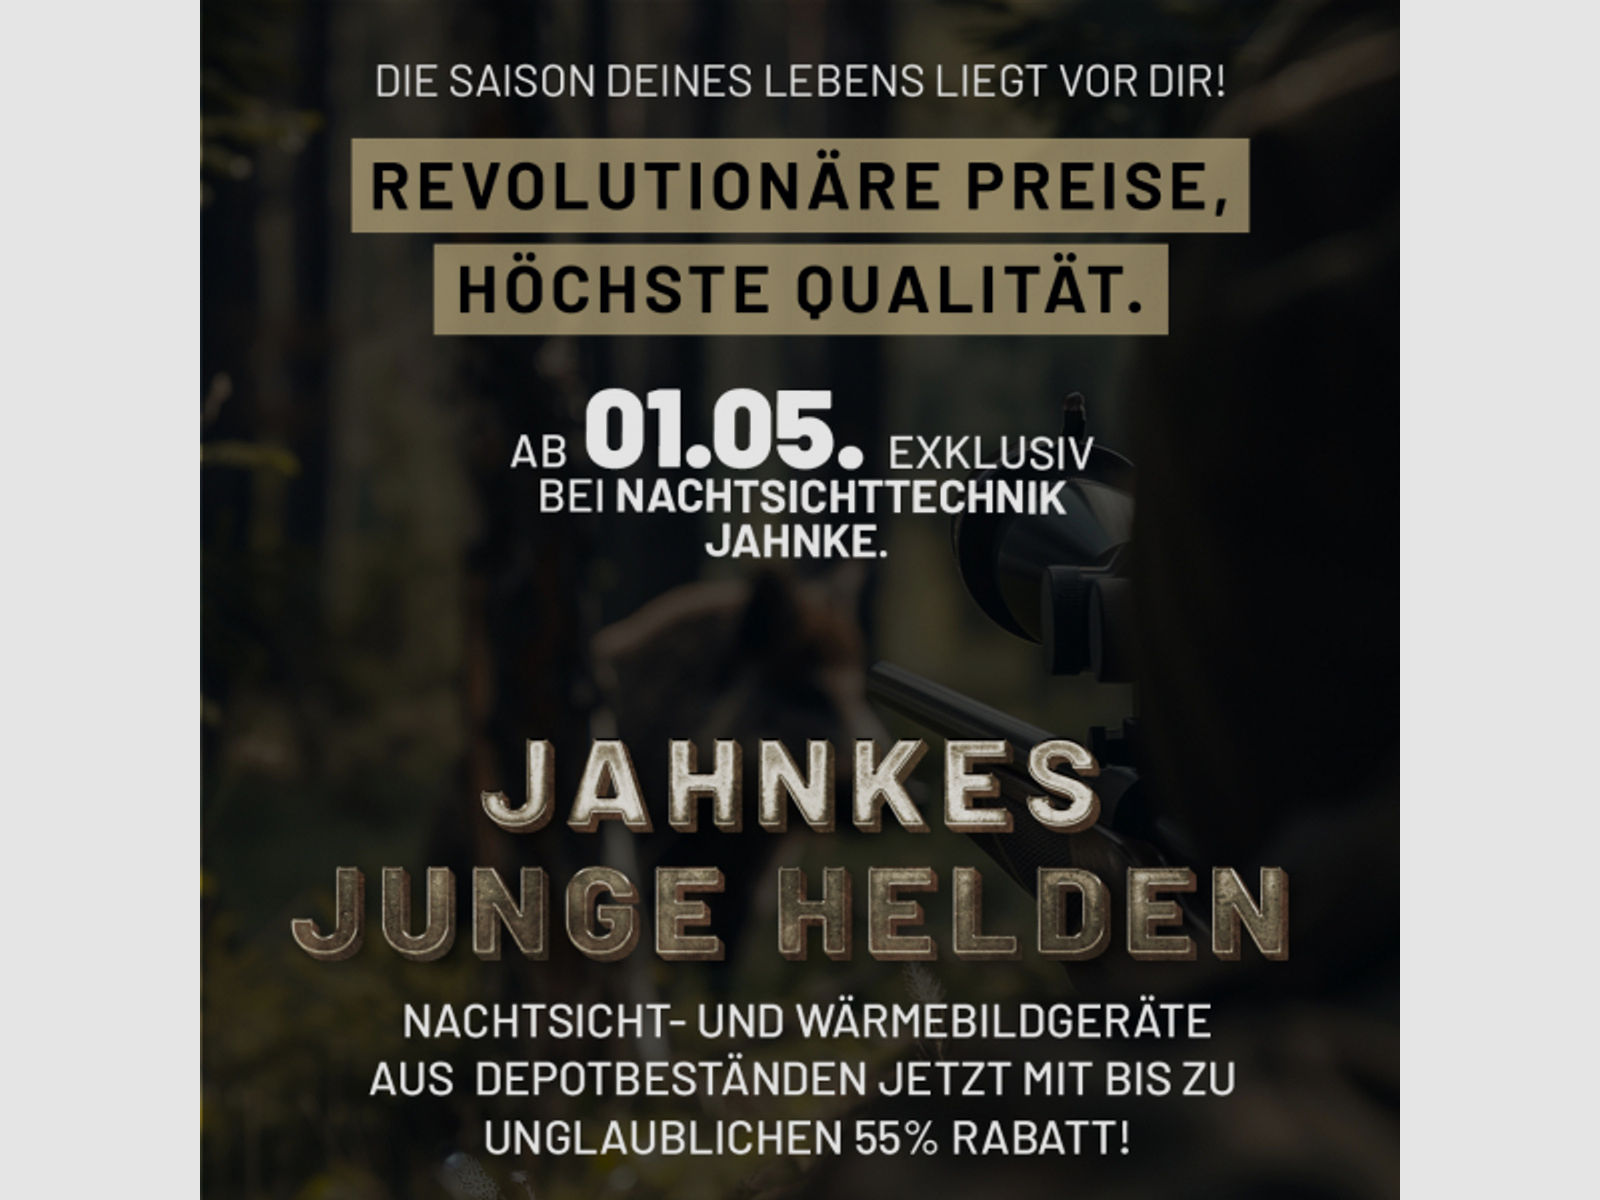 DJ-8 NSV 1×58 JJH aus der Jahnke Junge Helden" Aktion LK 2 S 1, Jahnke Premium